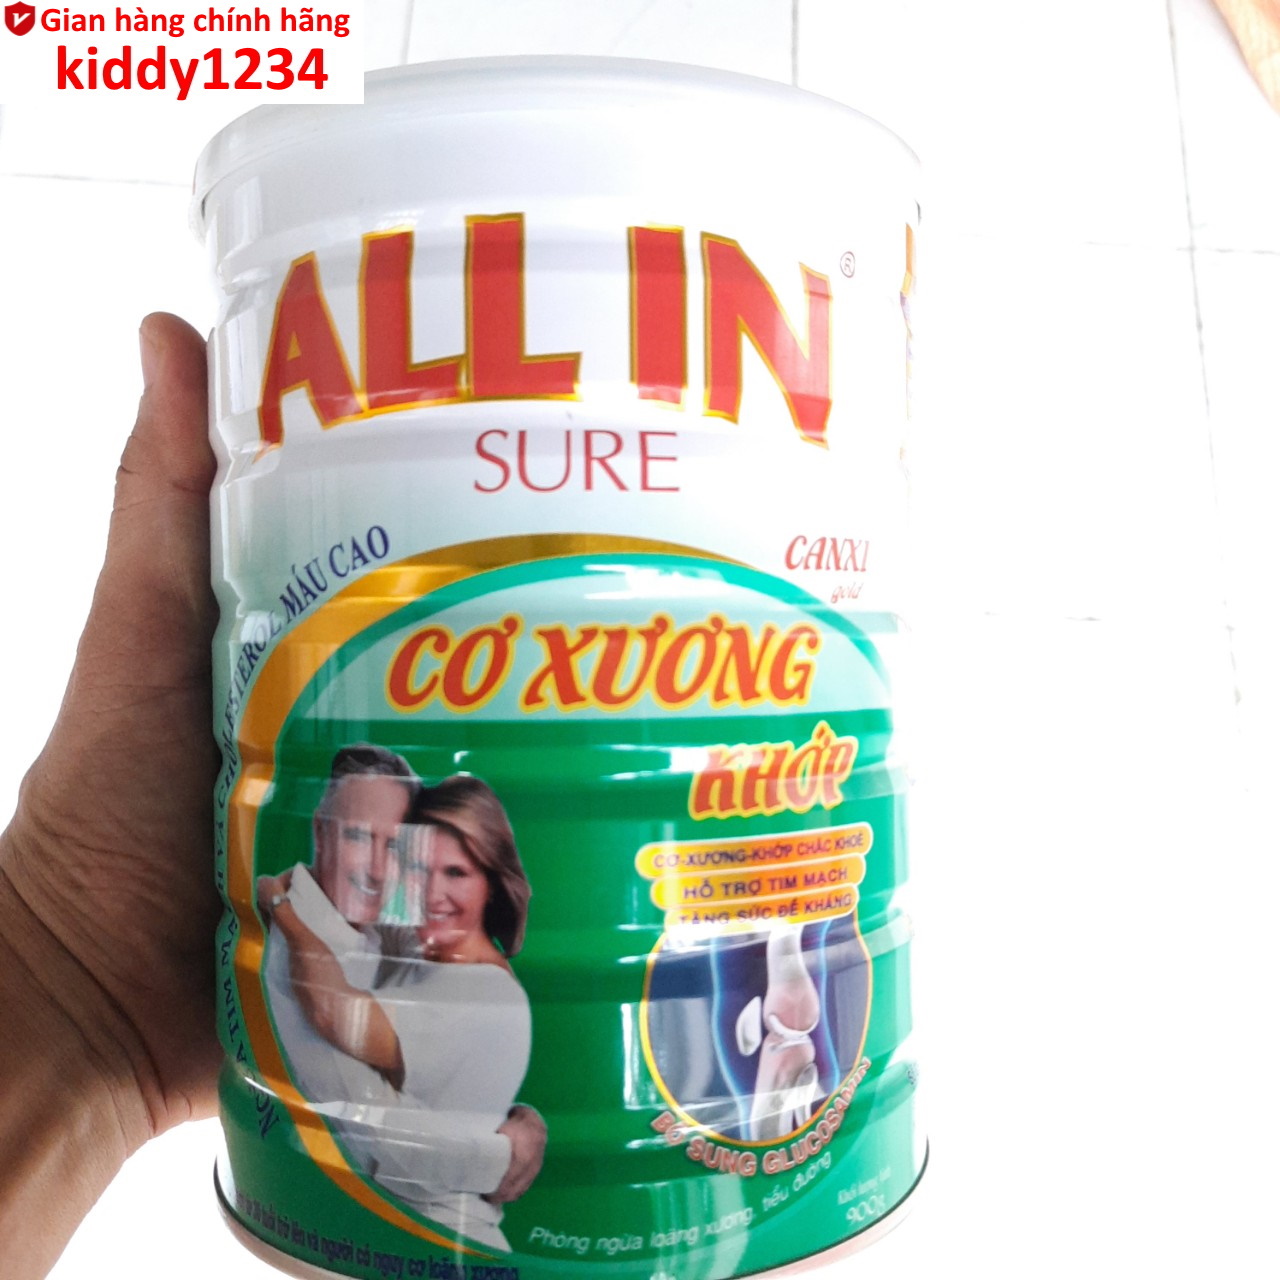 Sữa Cơ xương khớp All In Sure 900g ngừa loãng xương kiddy1234